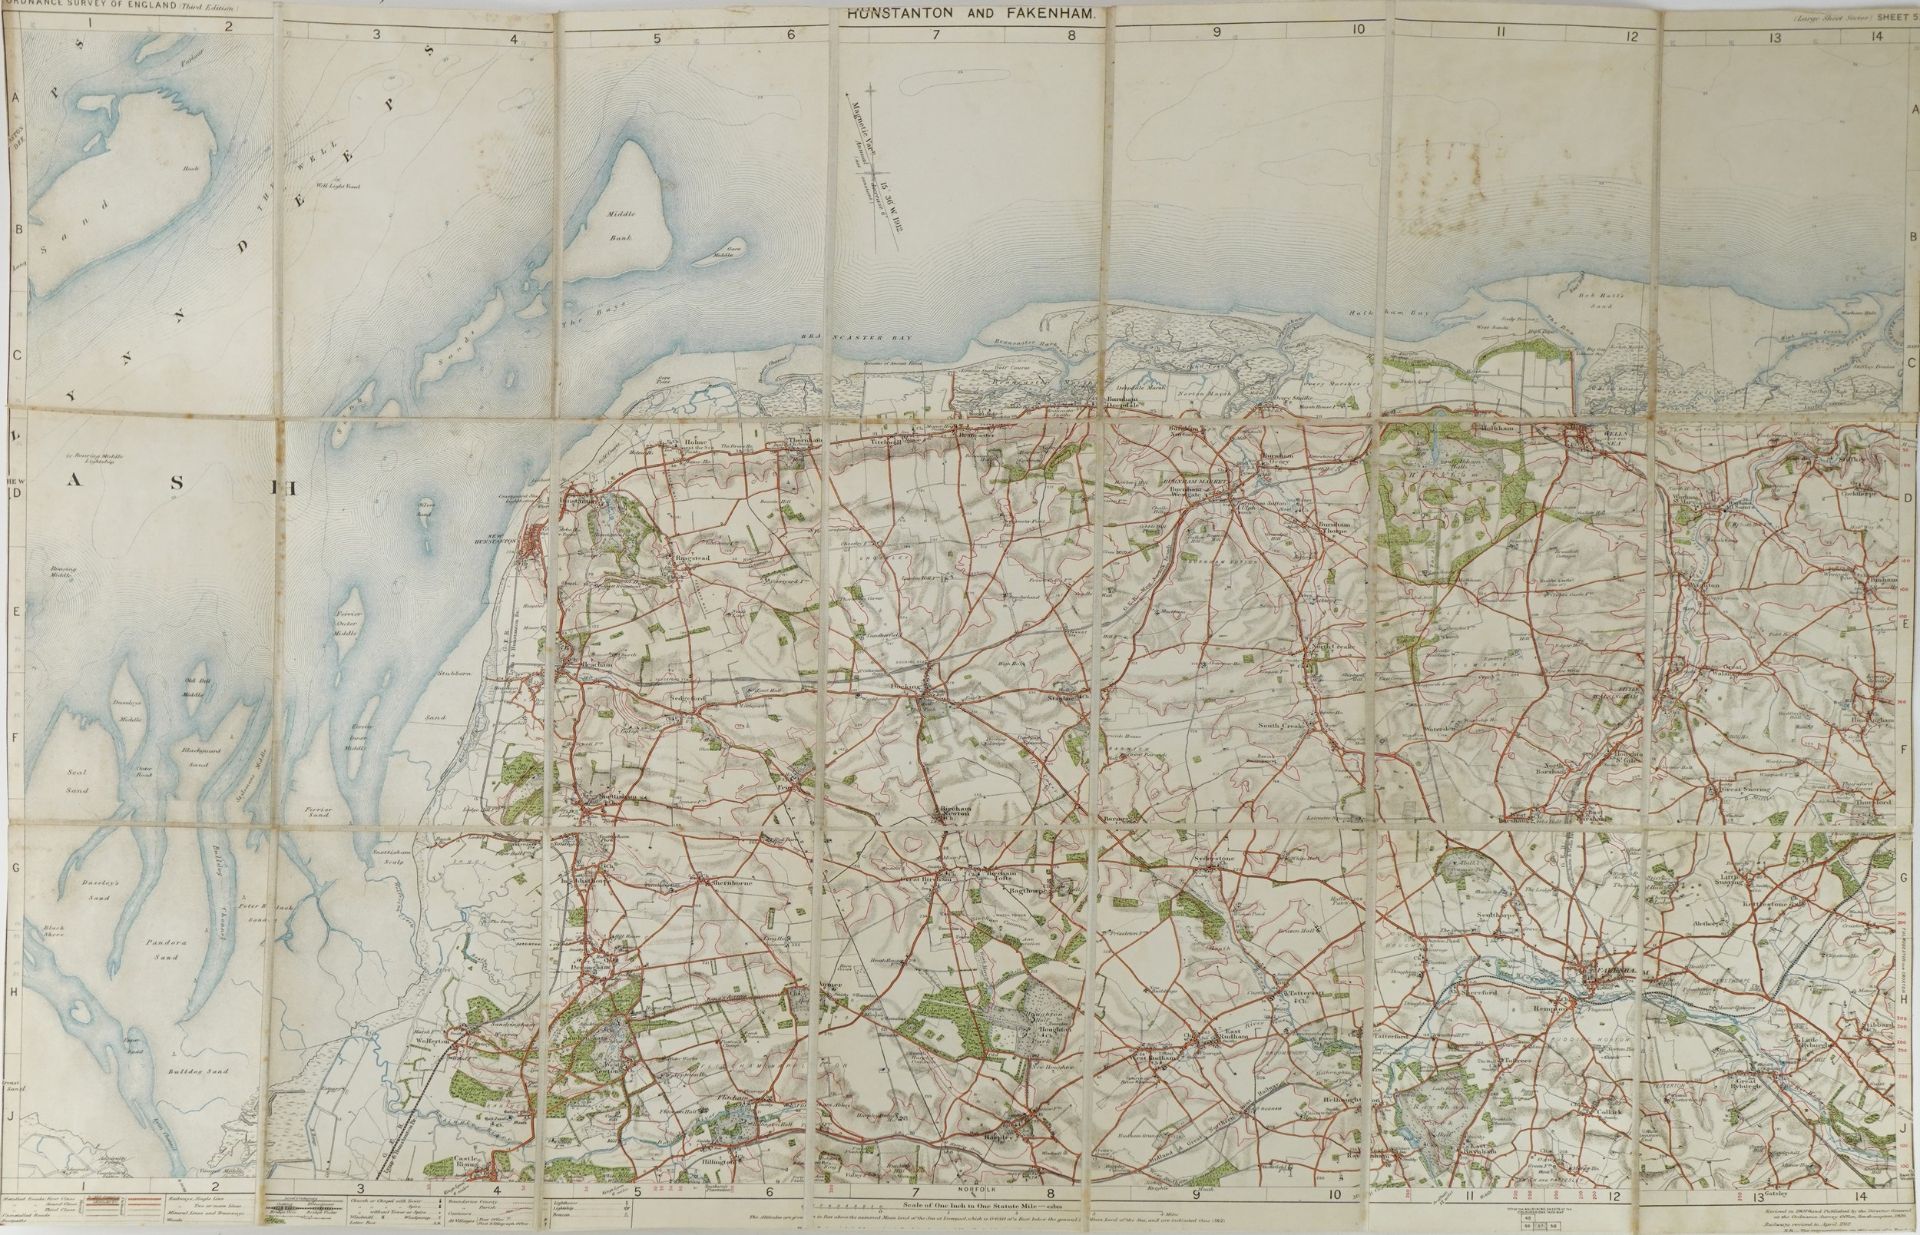 Folding linen backed map of Hunstanton & Fakenham dated 1912, 16.5cm x 10cm when closed